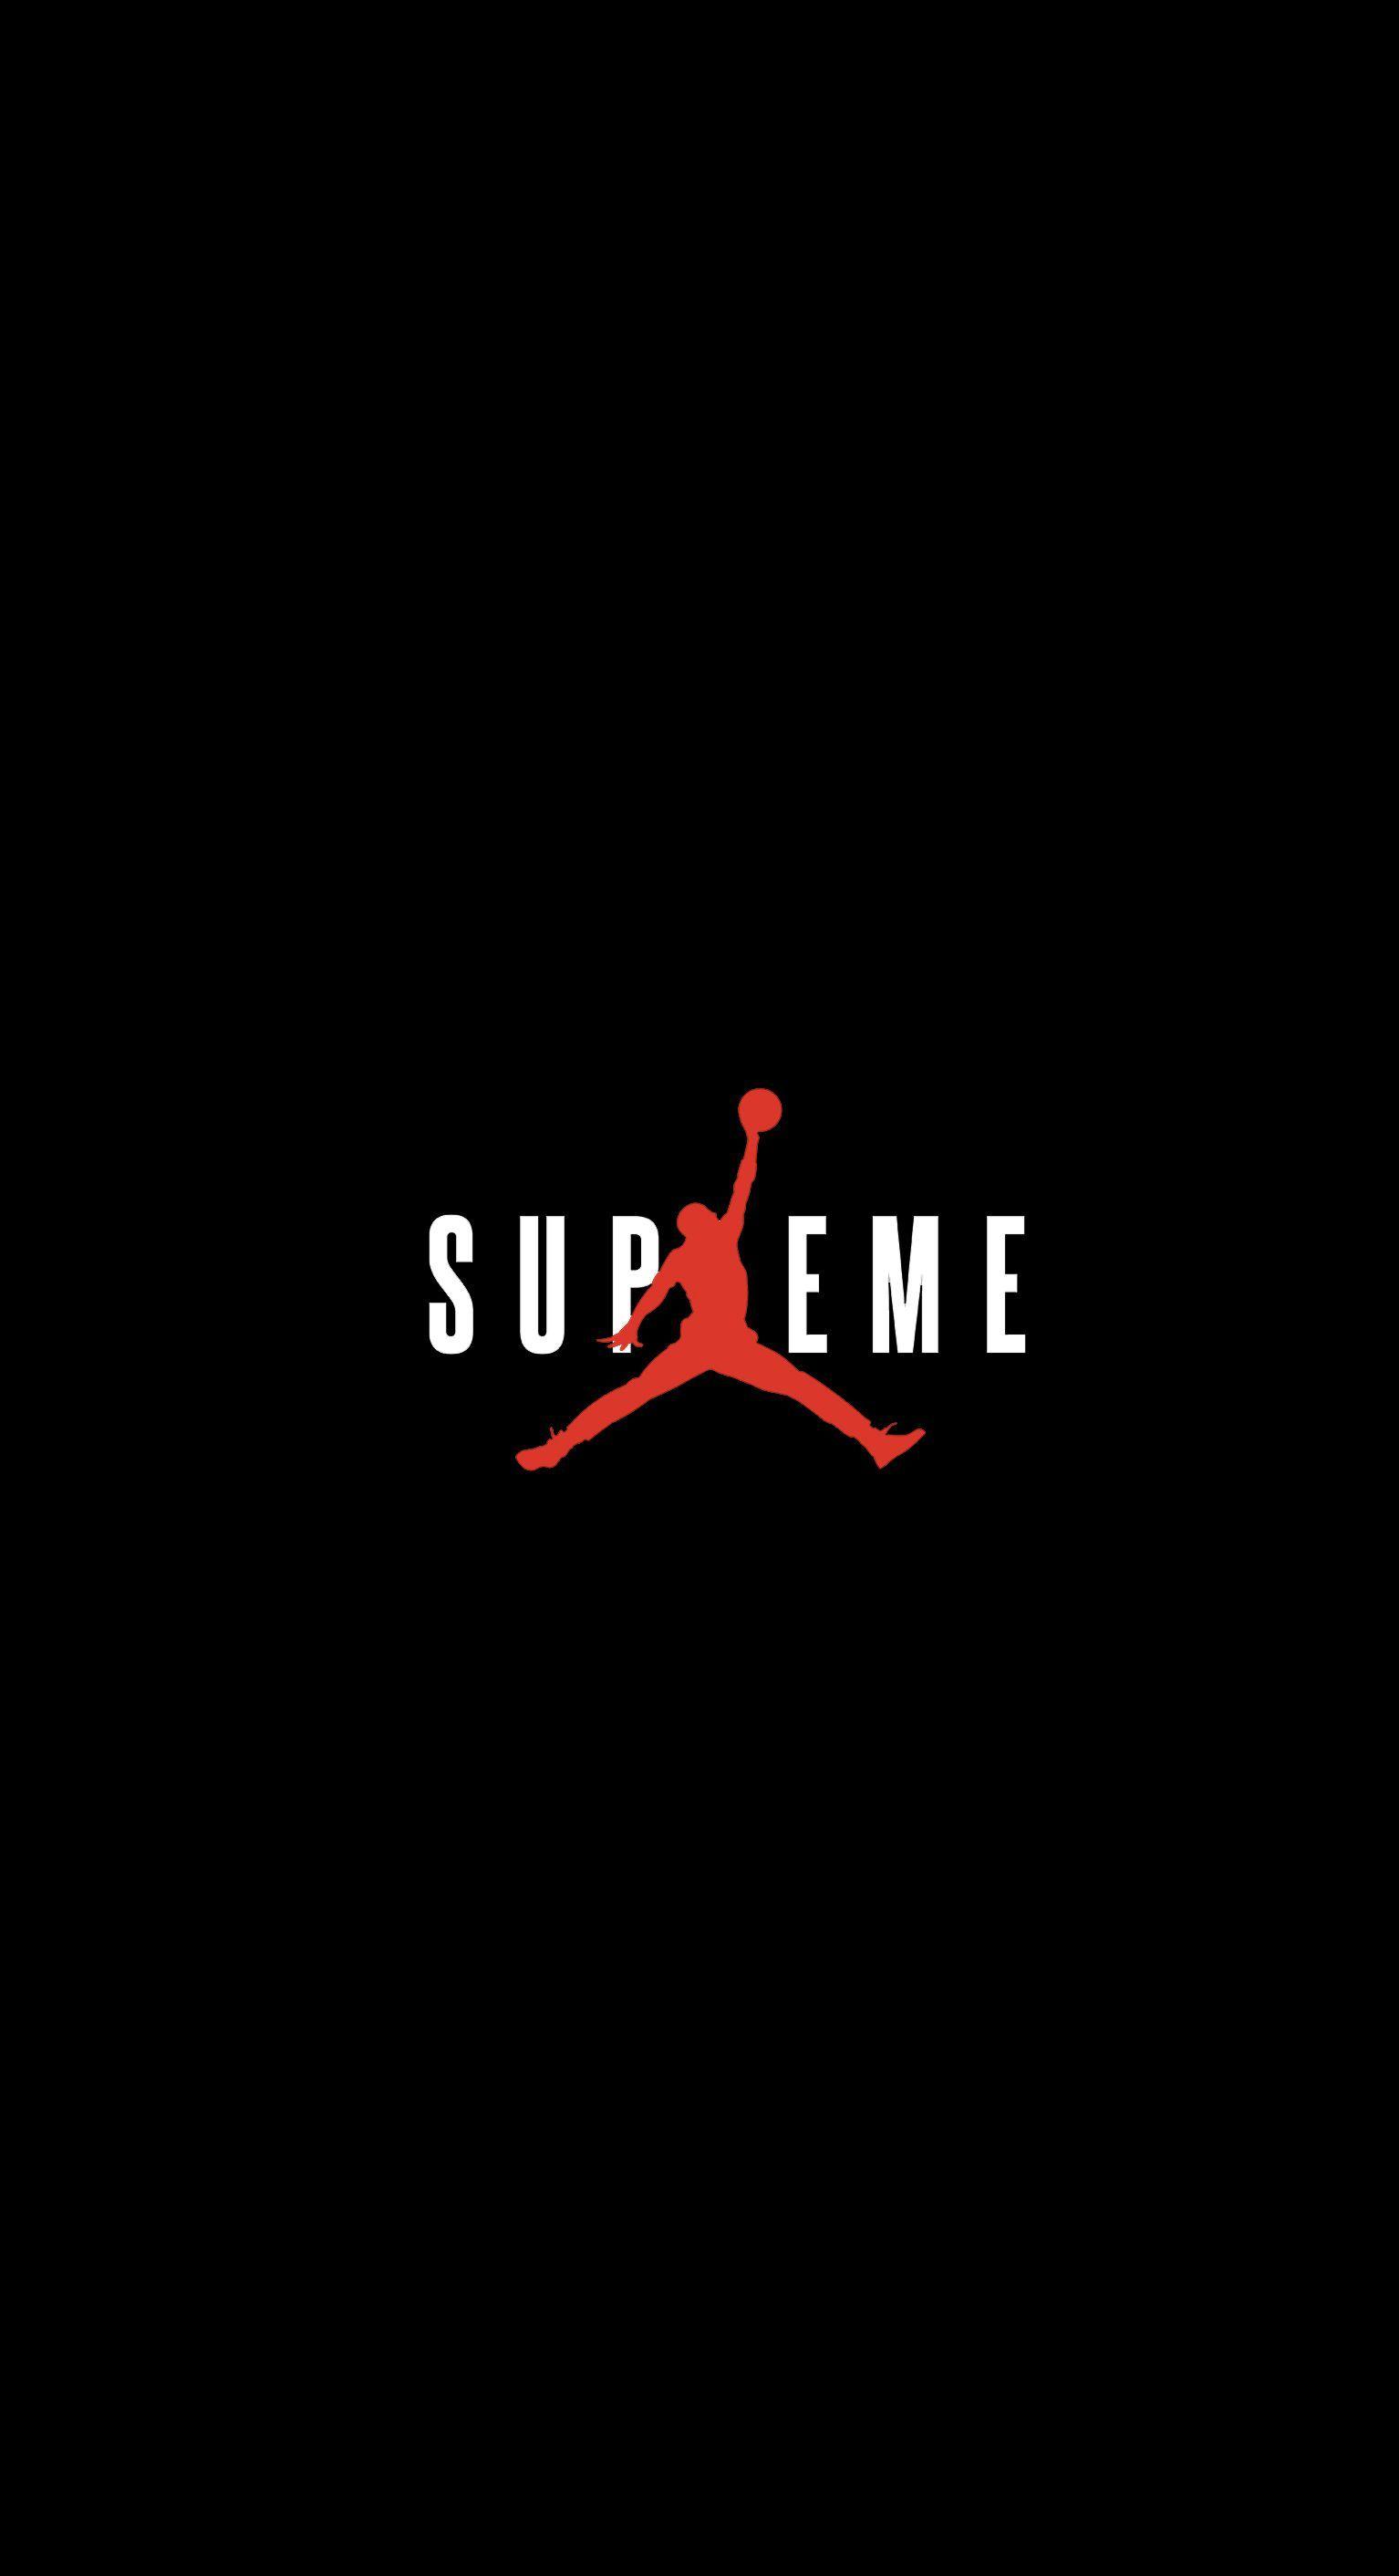 Supreme Basketball Logo - Supreme x Jordan Wallpaper : streetwear Wallpaper